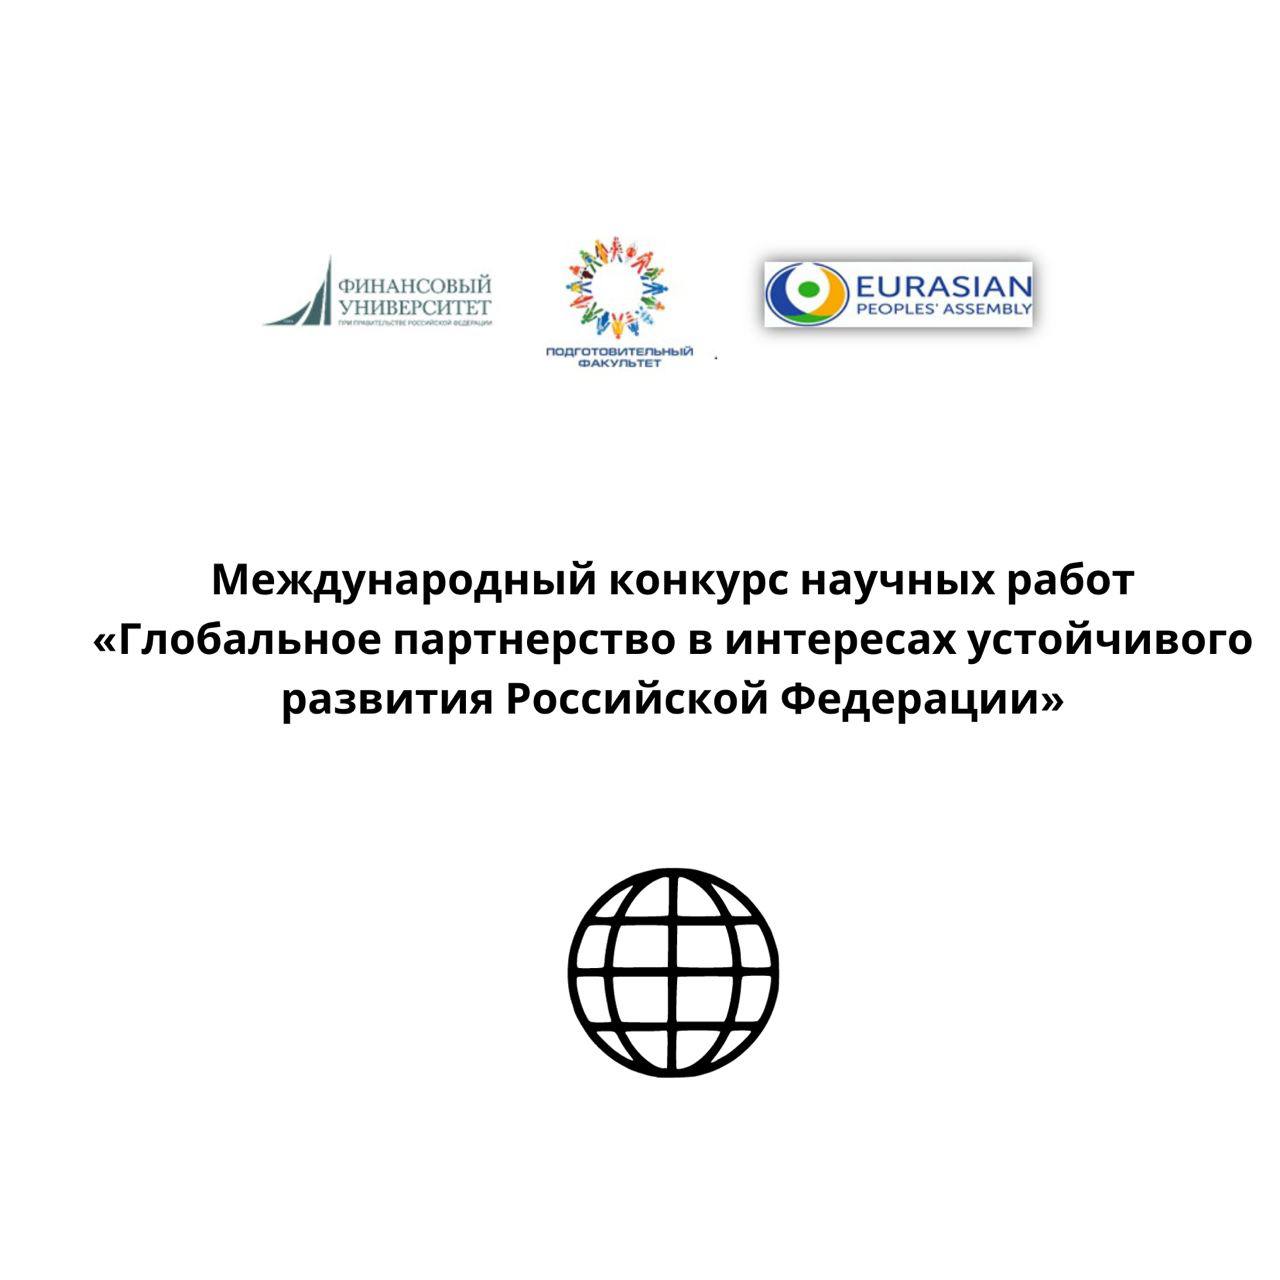 Международный конкурс научных работ «Глобальное партнерство в интересах устойчивого развития Российской Федерации»